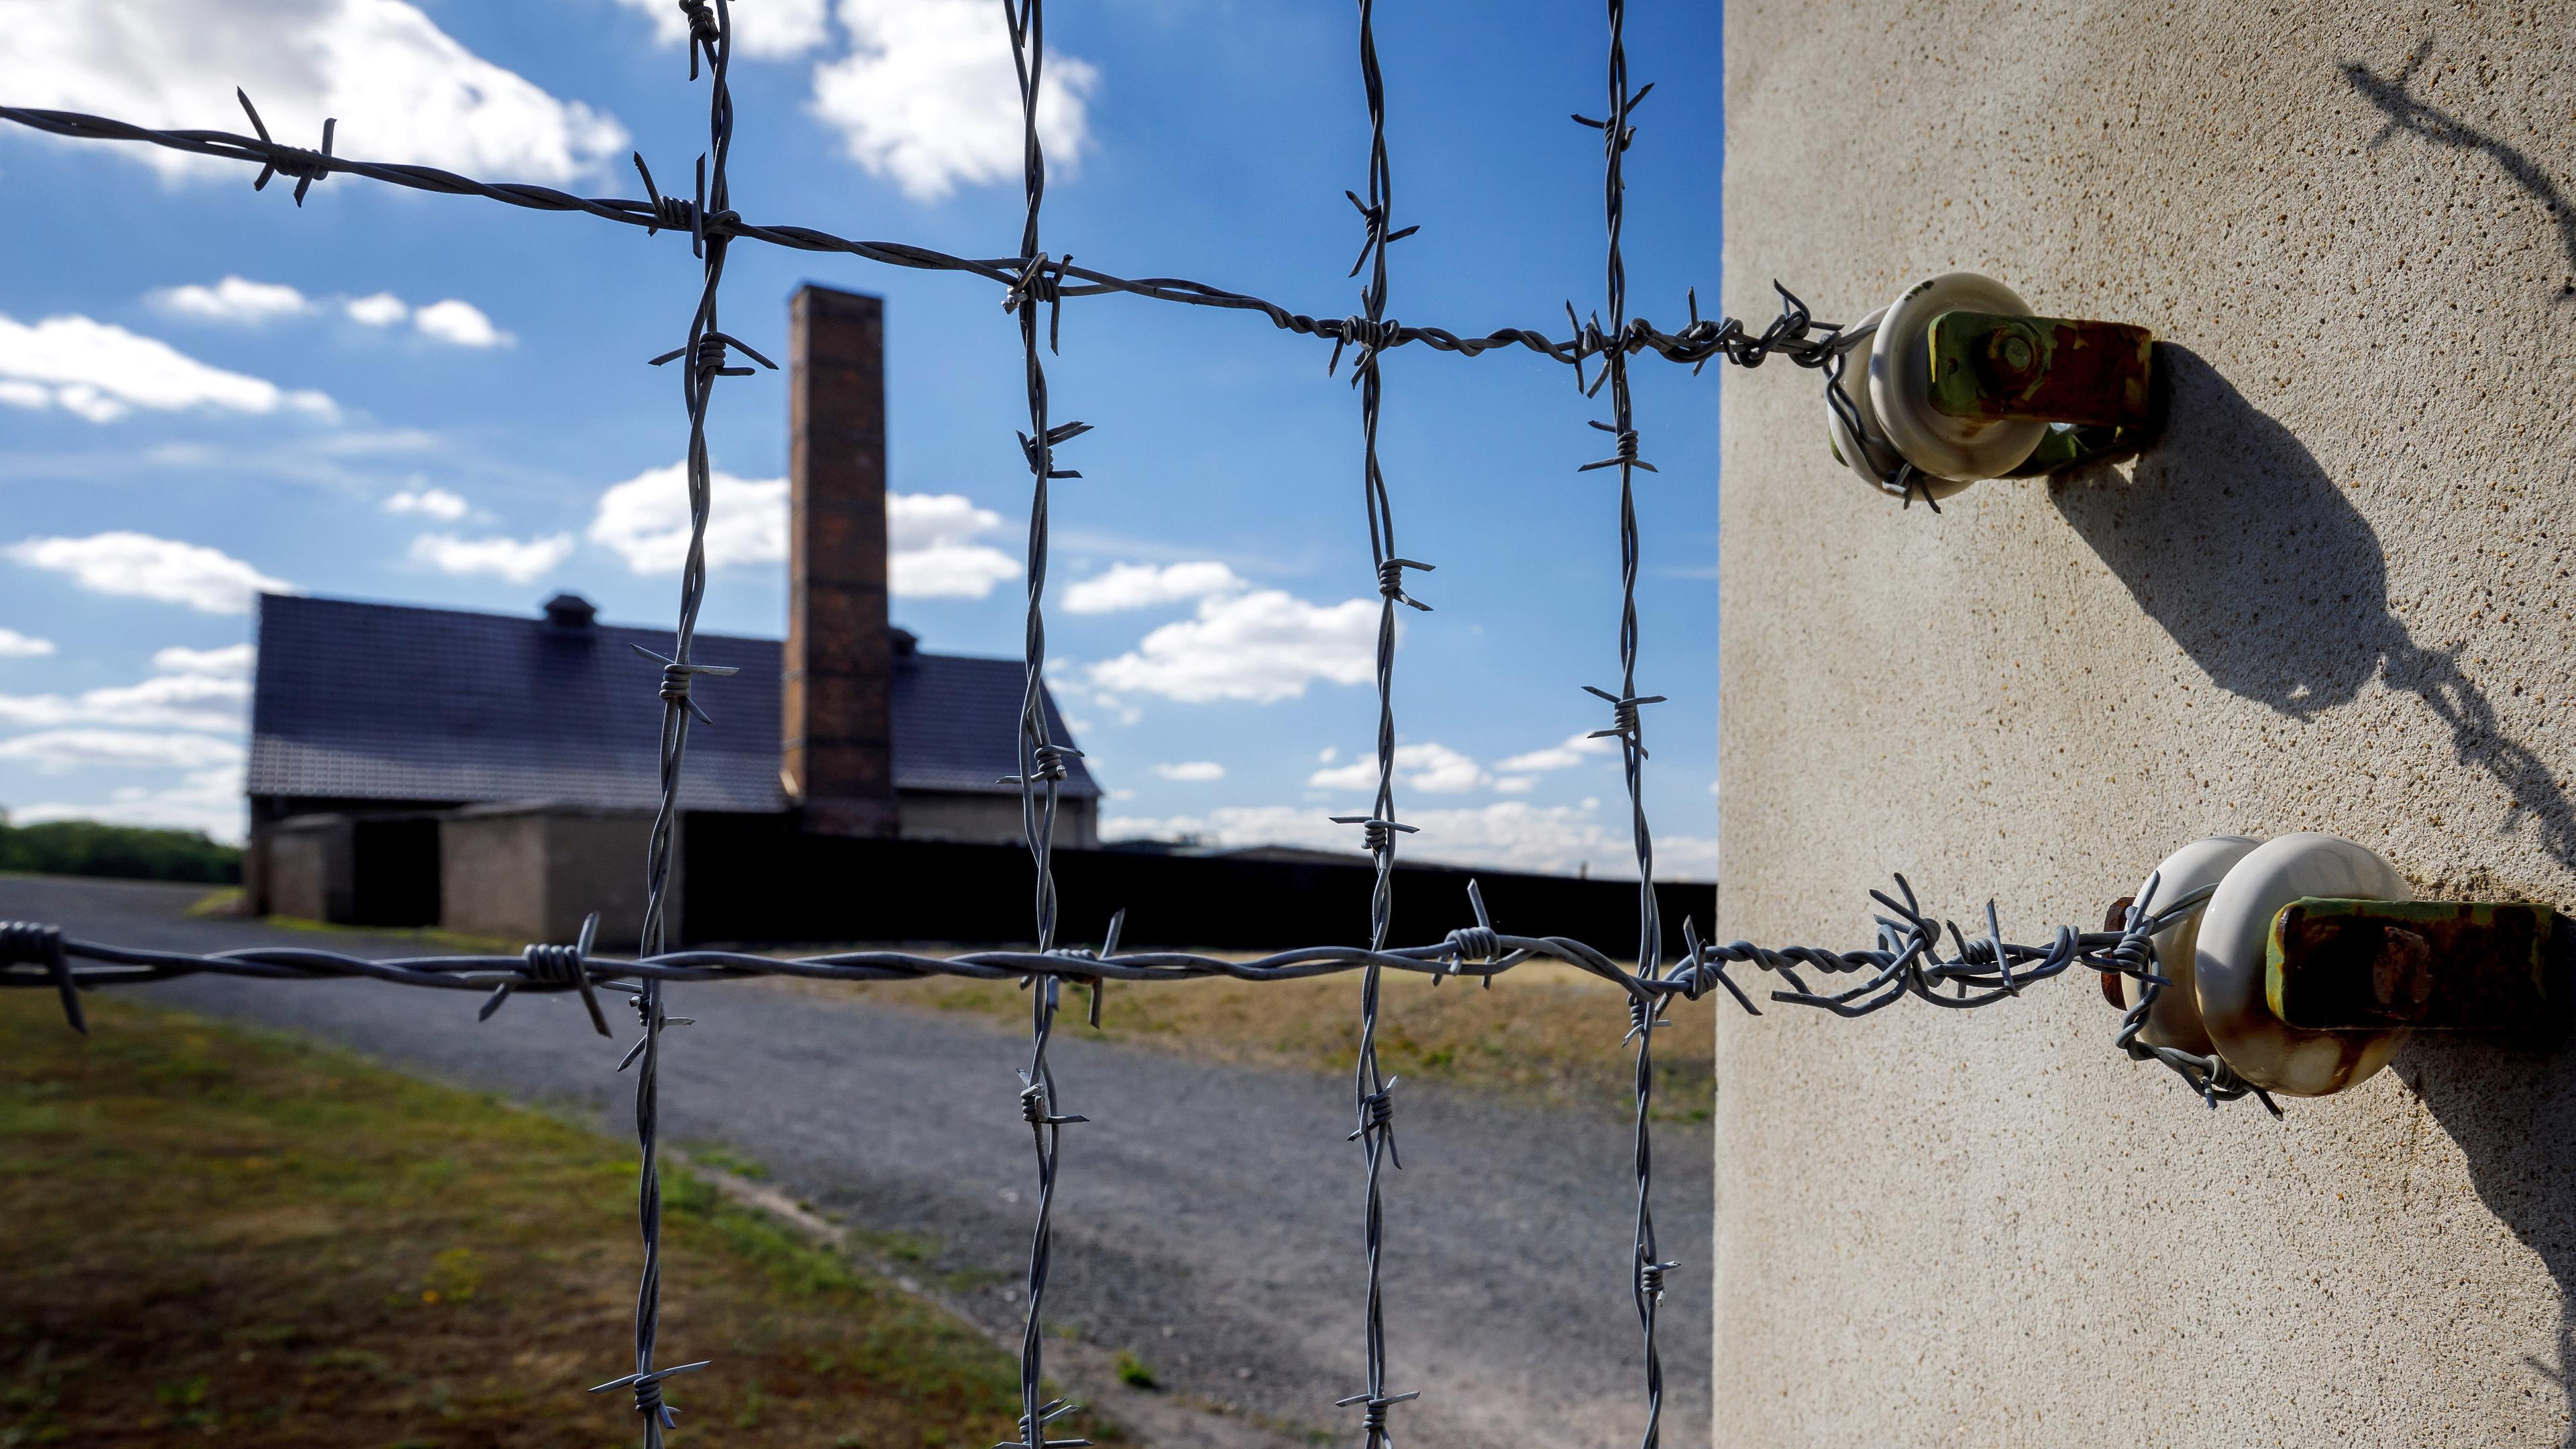 Stacheldrahtzaun des früheren KZ Buchenwald, aufgenommen am 06.08.2022